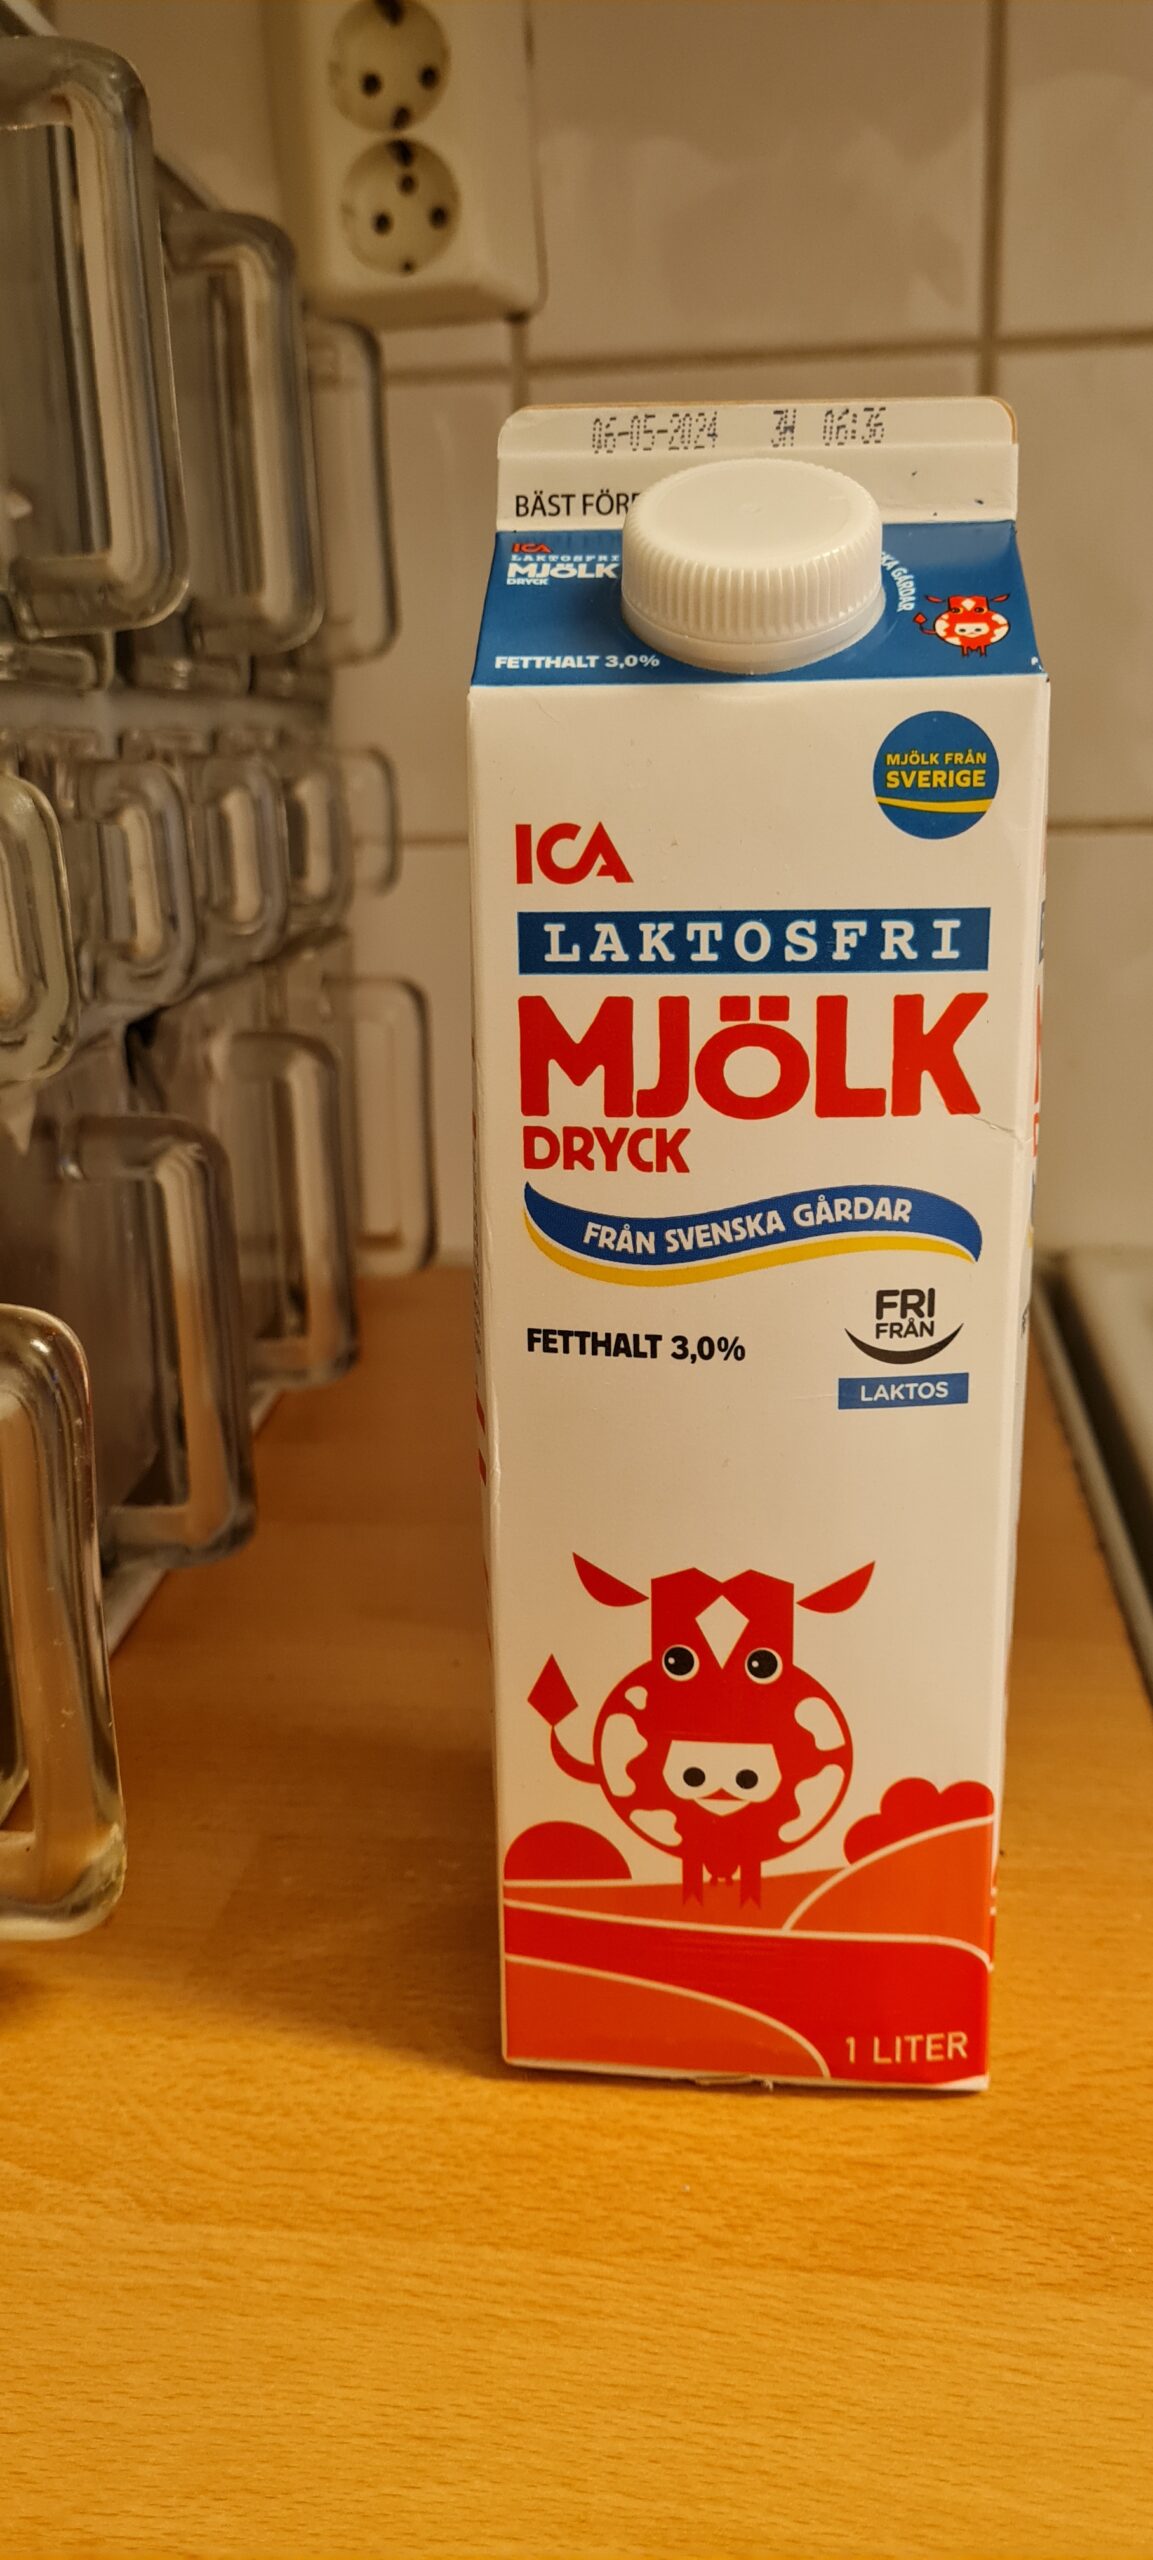 Laktosfritt mjölk från ICAs eget varumärke